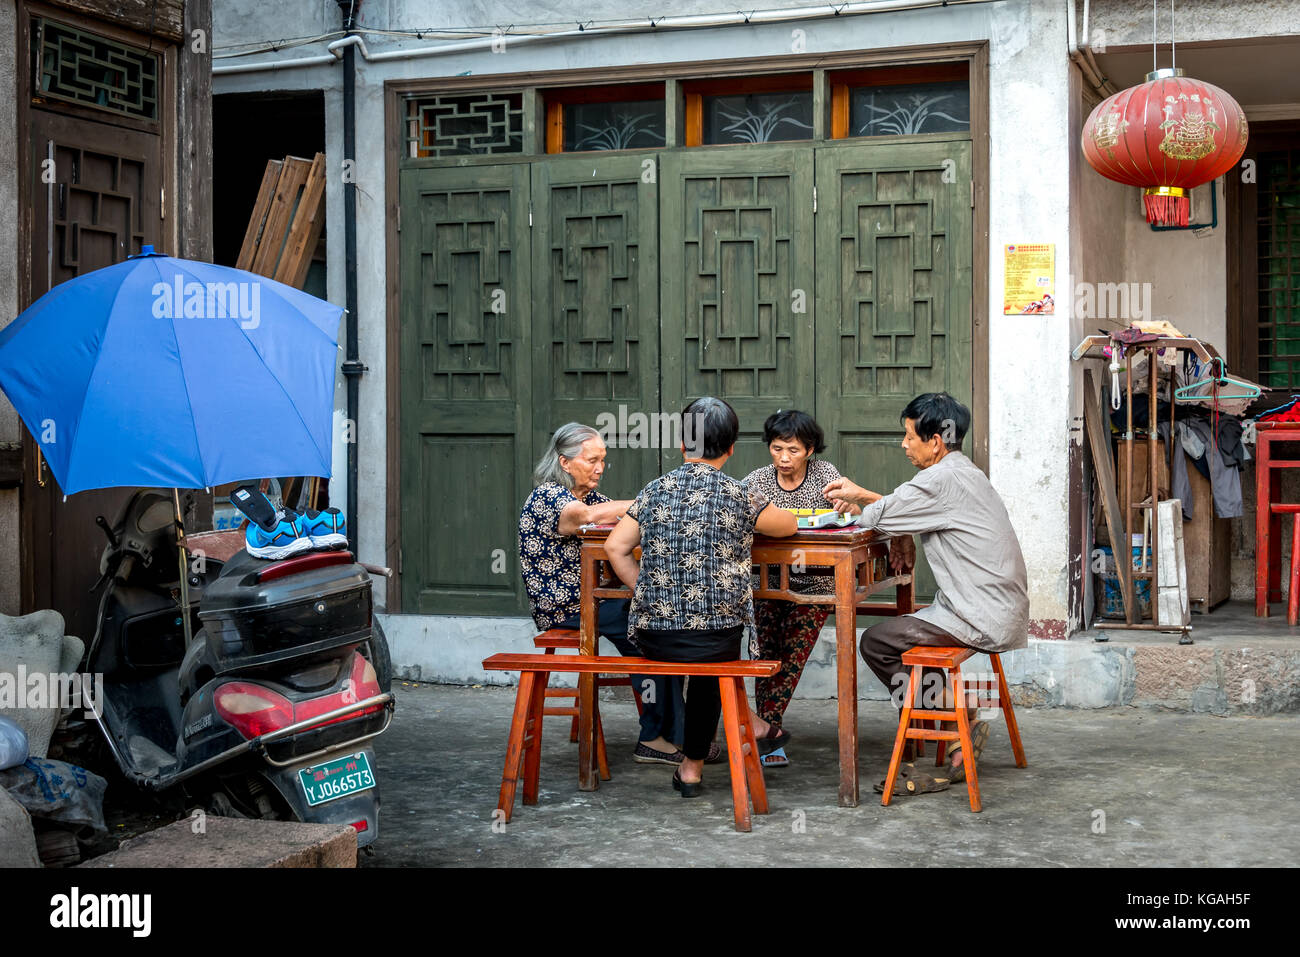 Quatre ans de chinois jouent un jeu à une table en bois dans une ruelle à Cangpo Village ancien, Yongjia County, Province de Zhejiang, Chine, la vie du village Banque D'Images